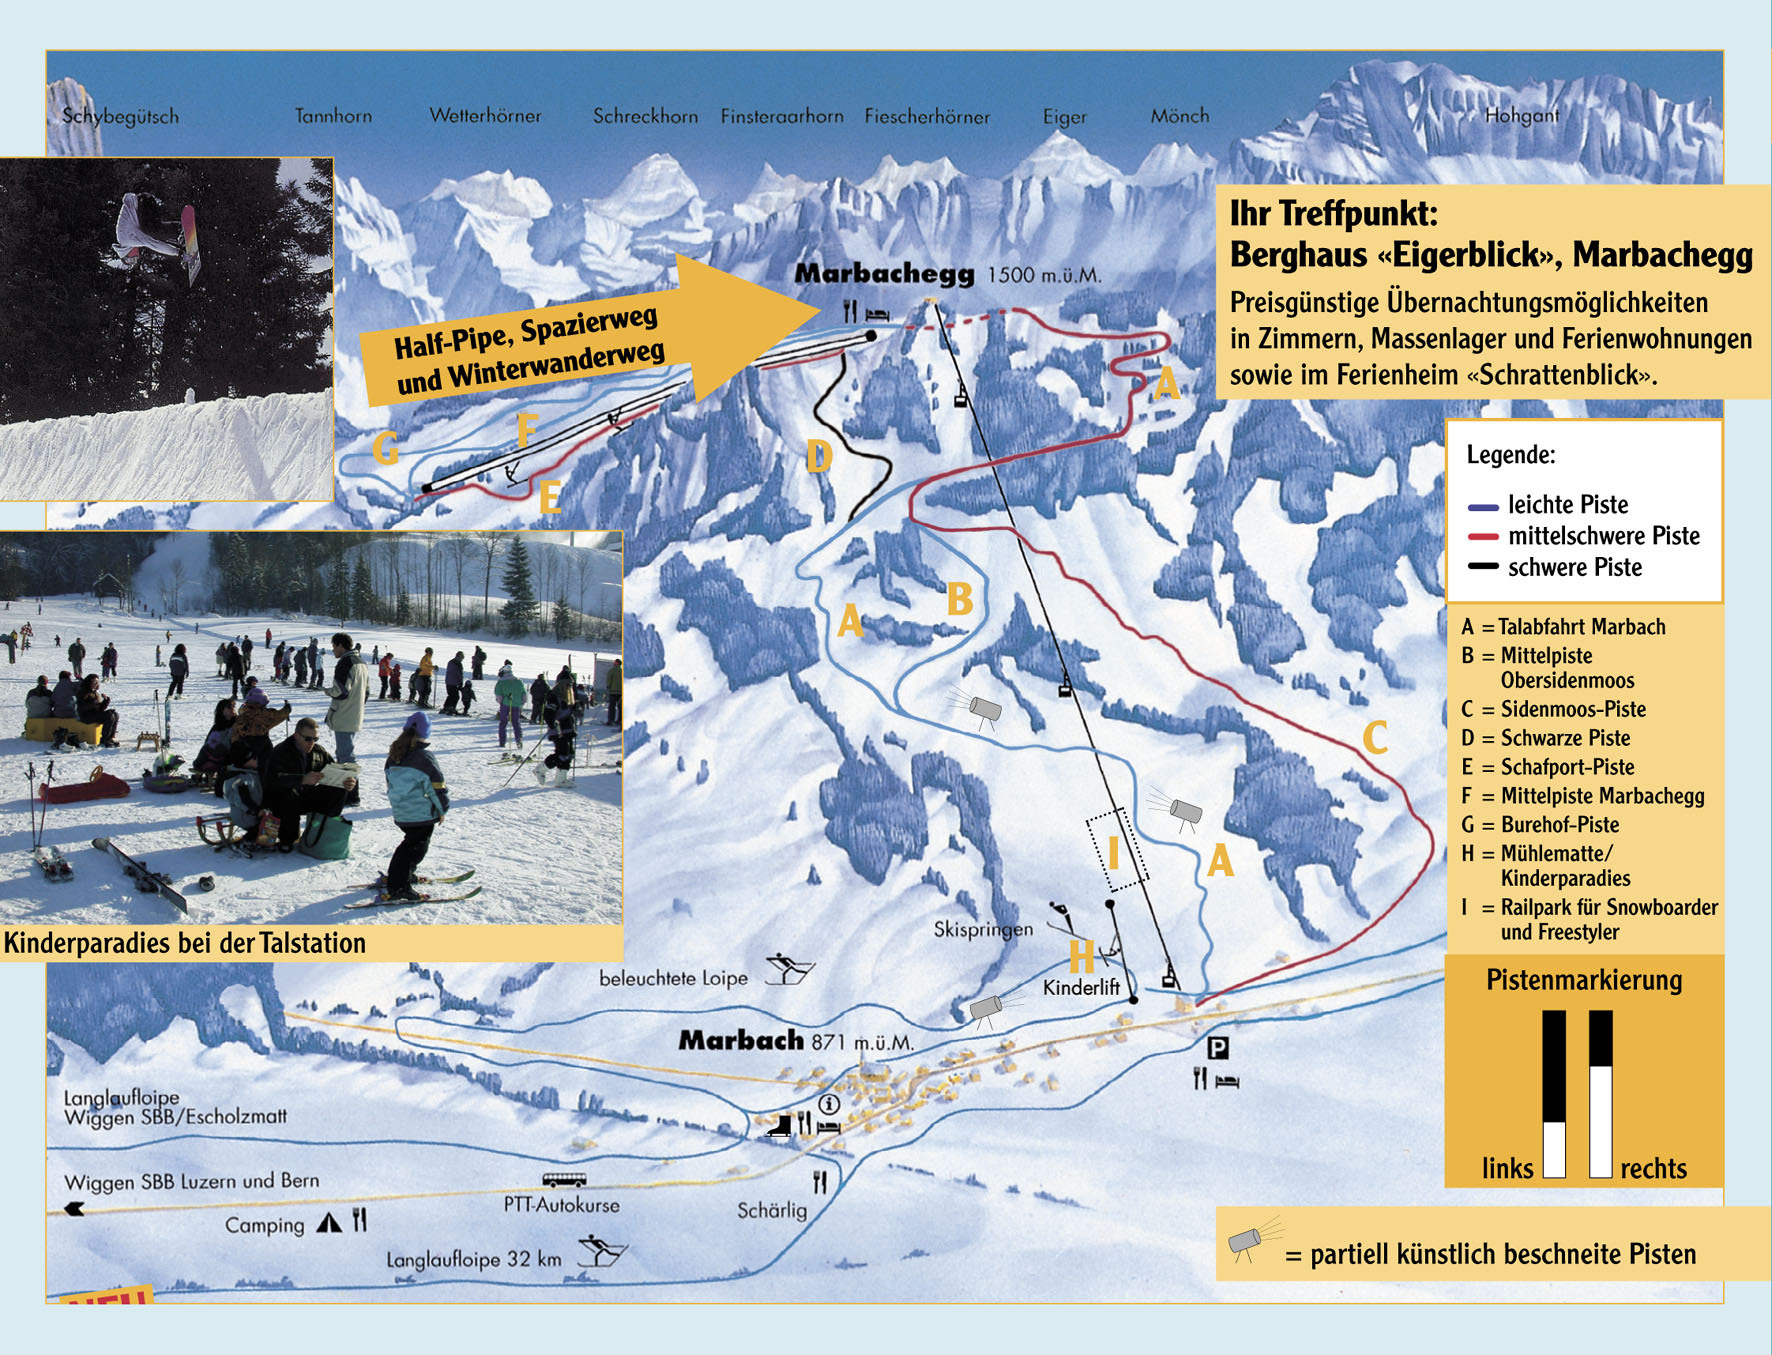 Marbach - Marbachegg Piste / Trail Map